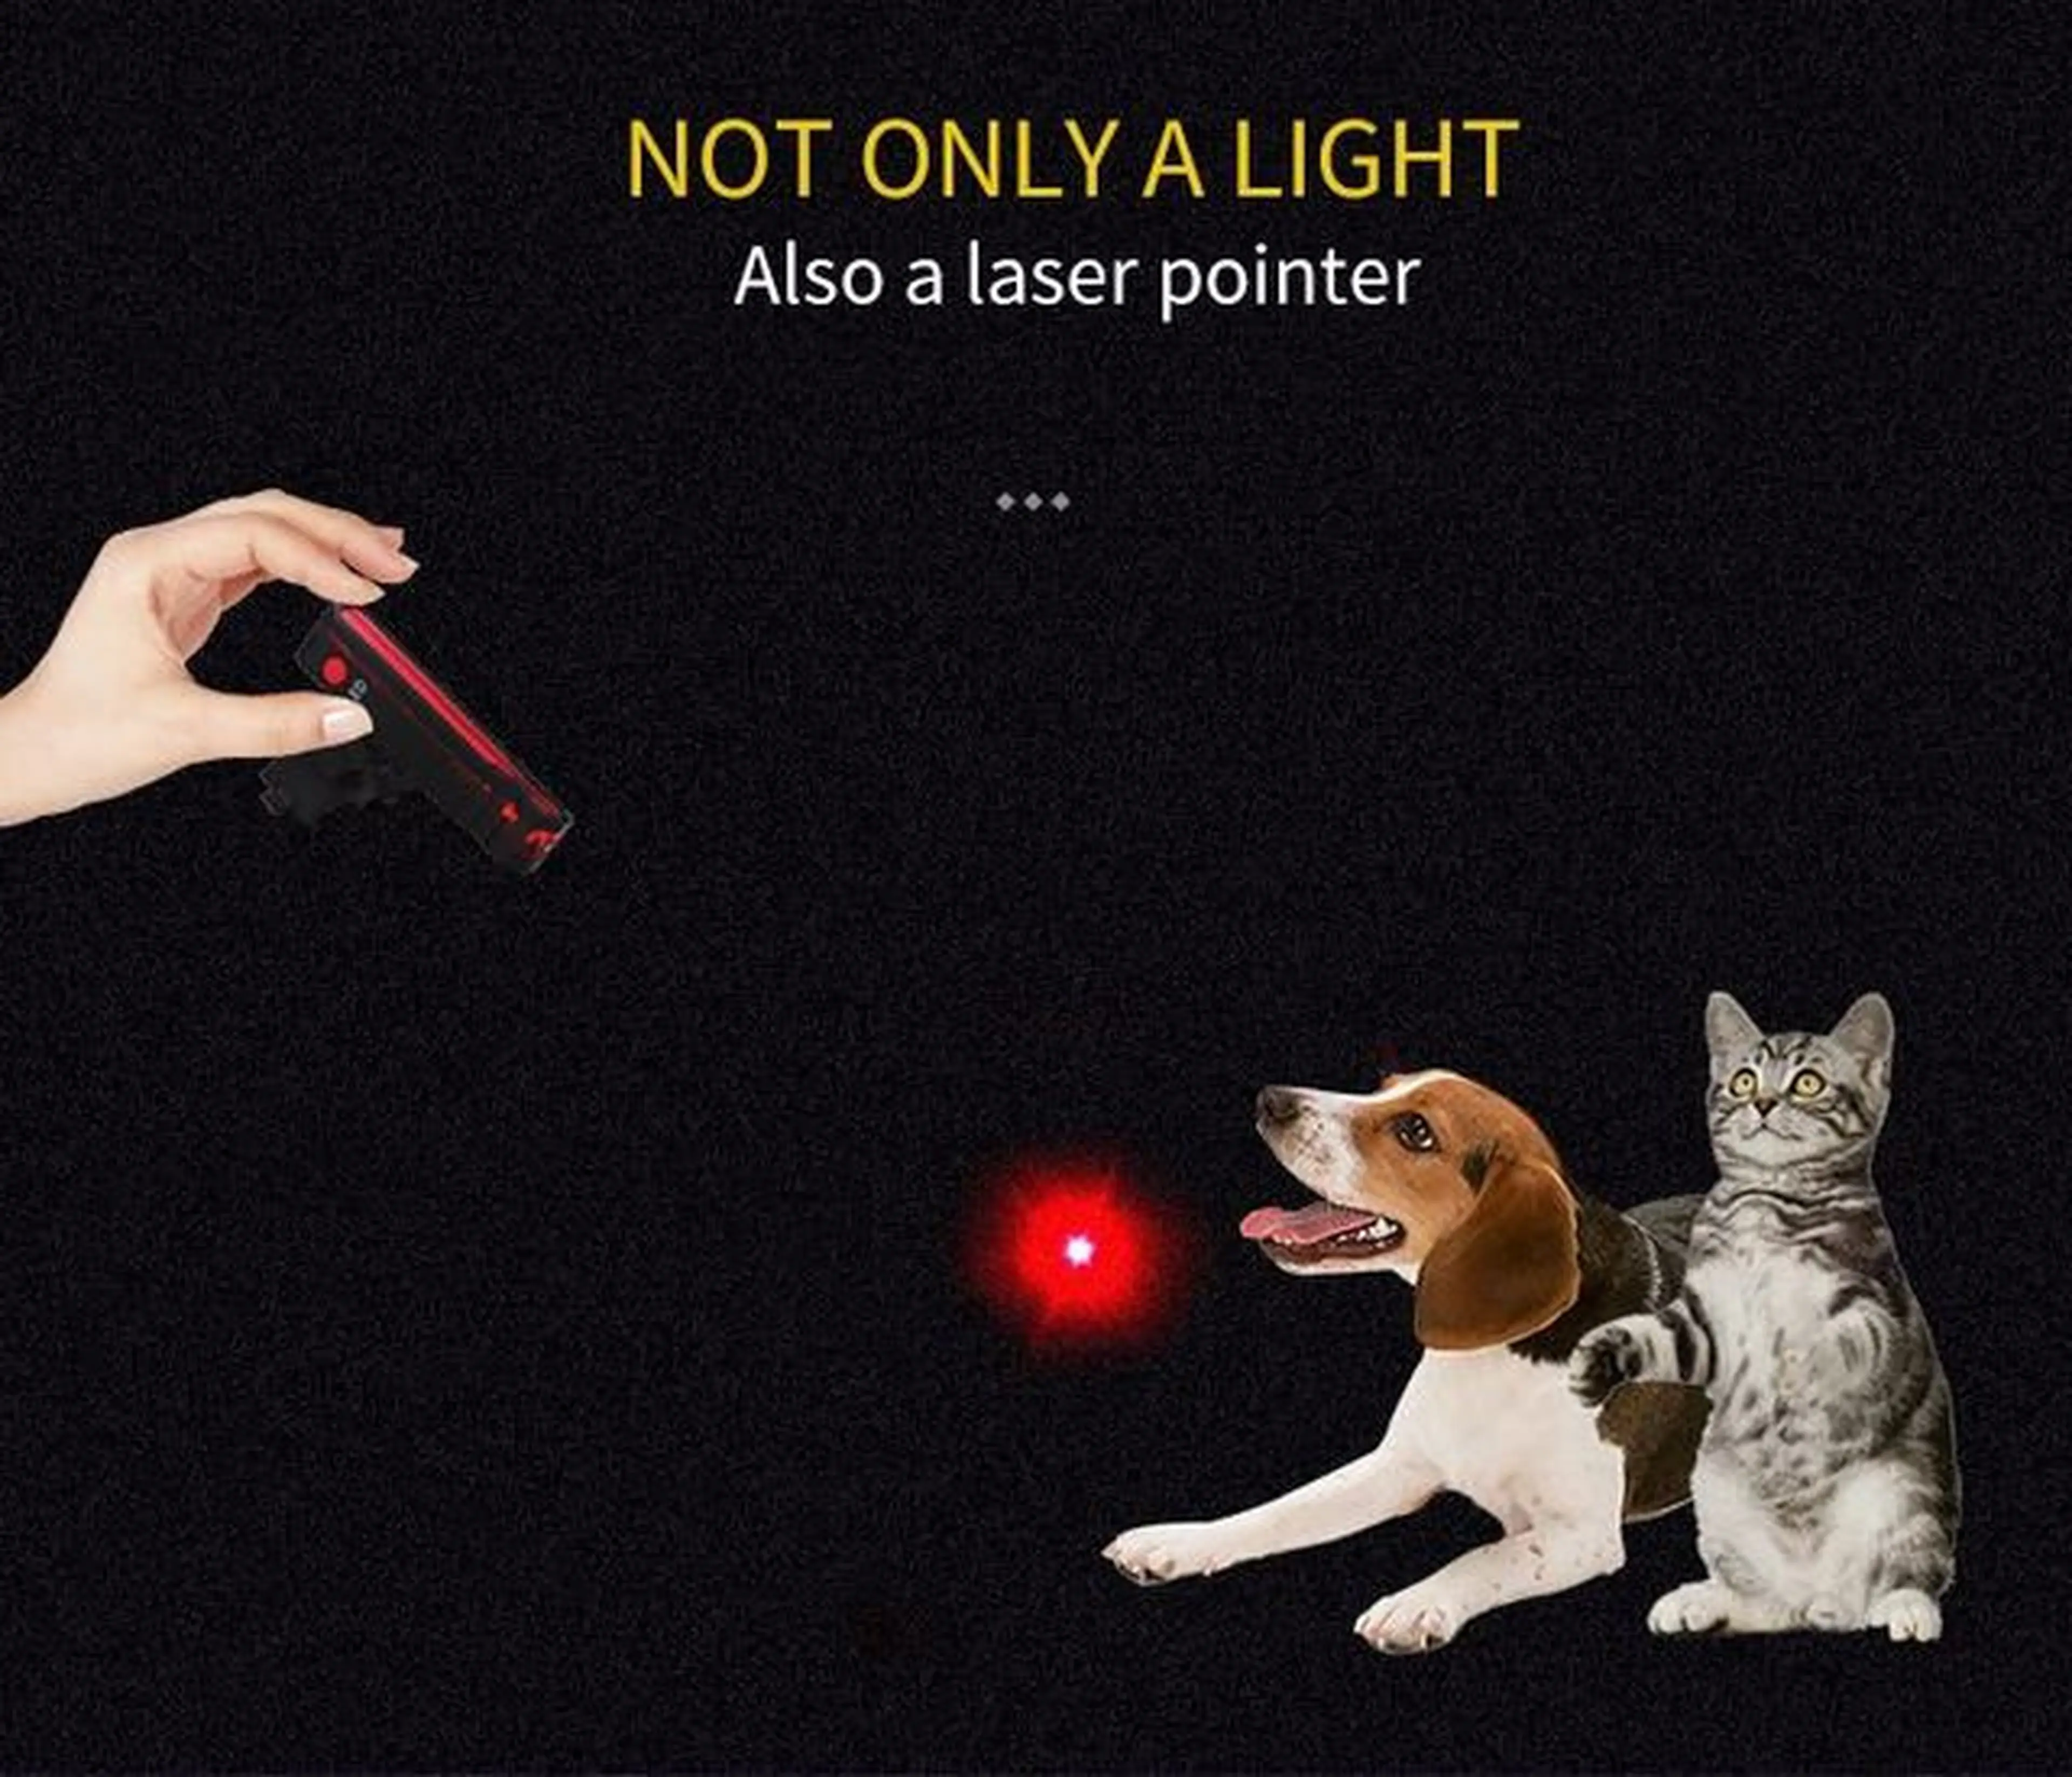 8. Stop Led laser